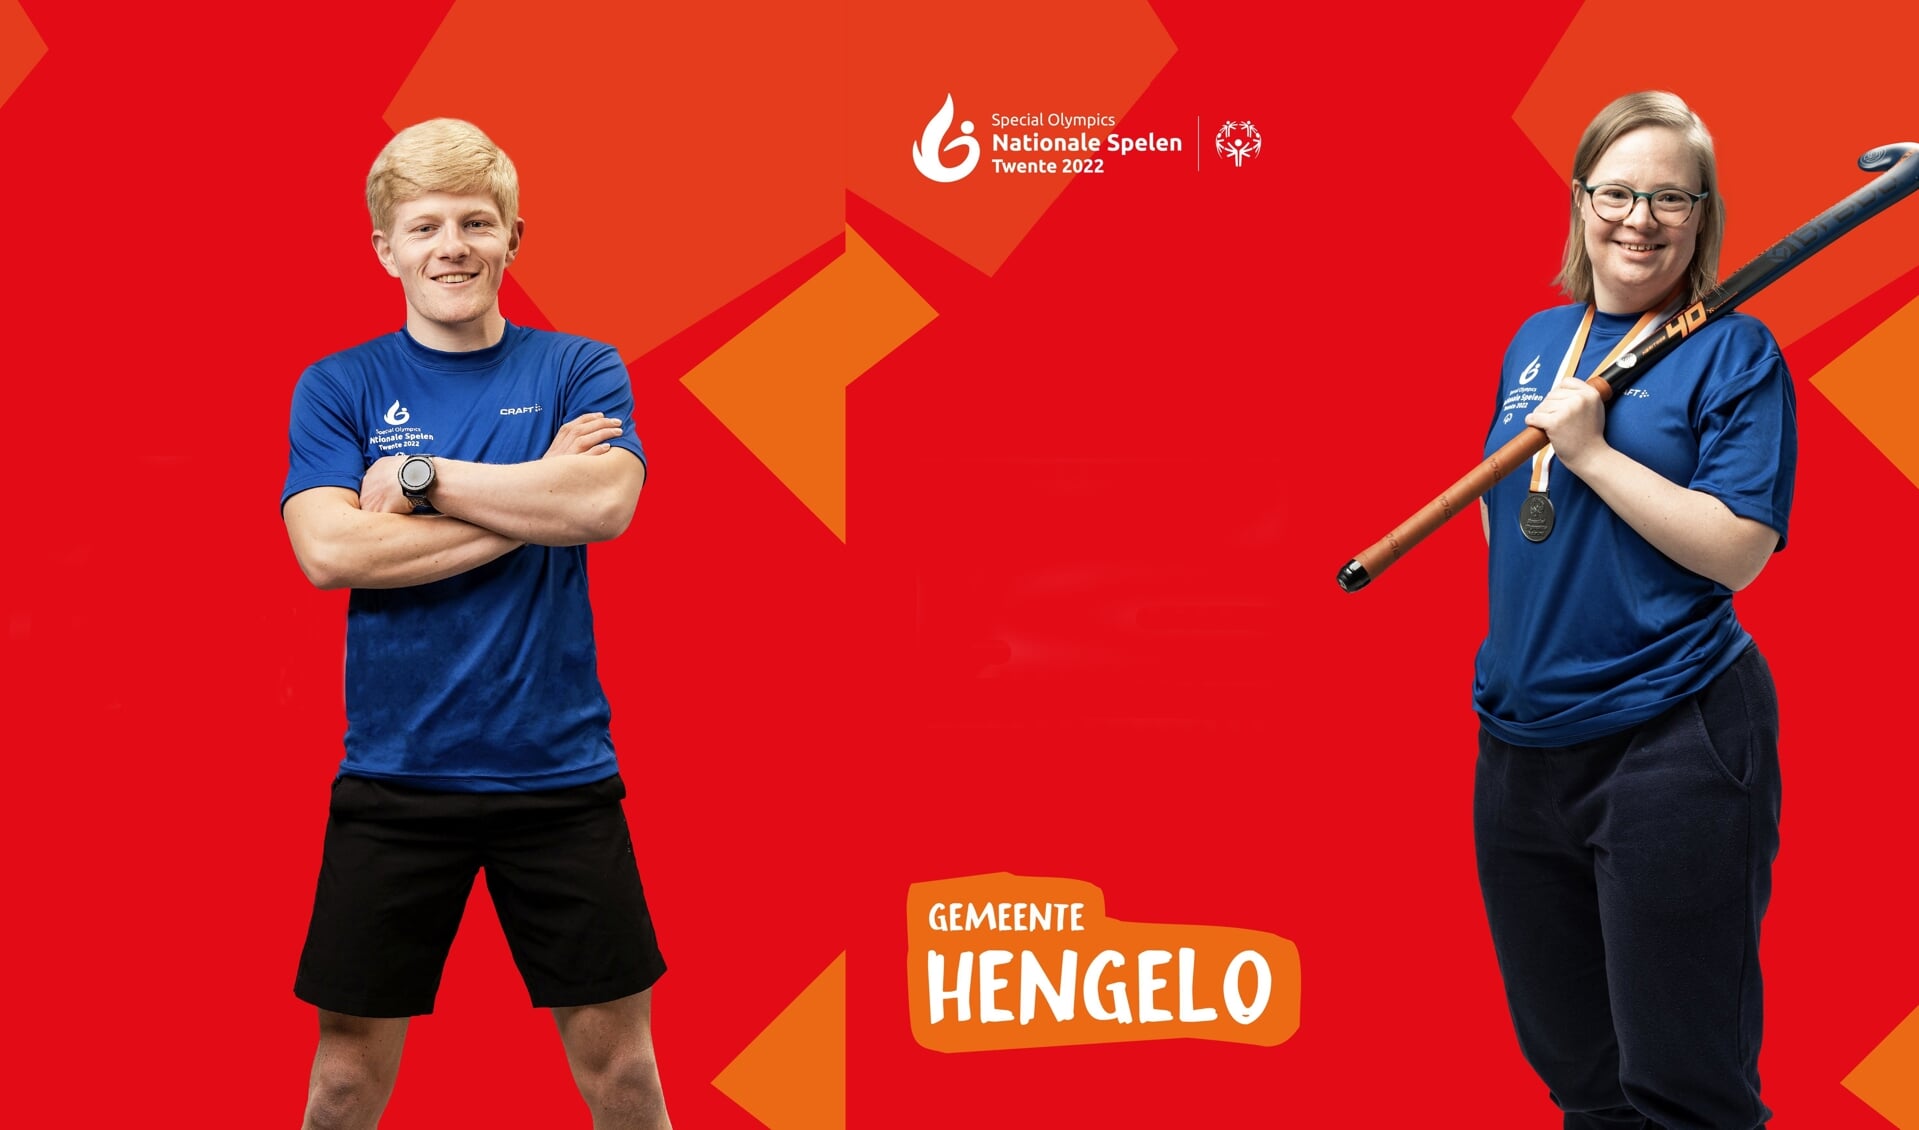 Friso Roeleveld en Sanne Droste verheugen zich op de Special Olympics. 